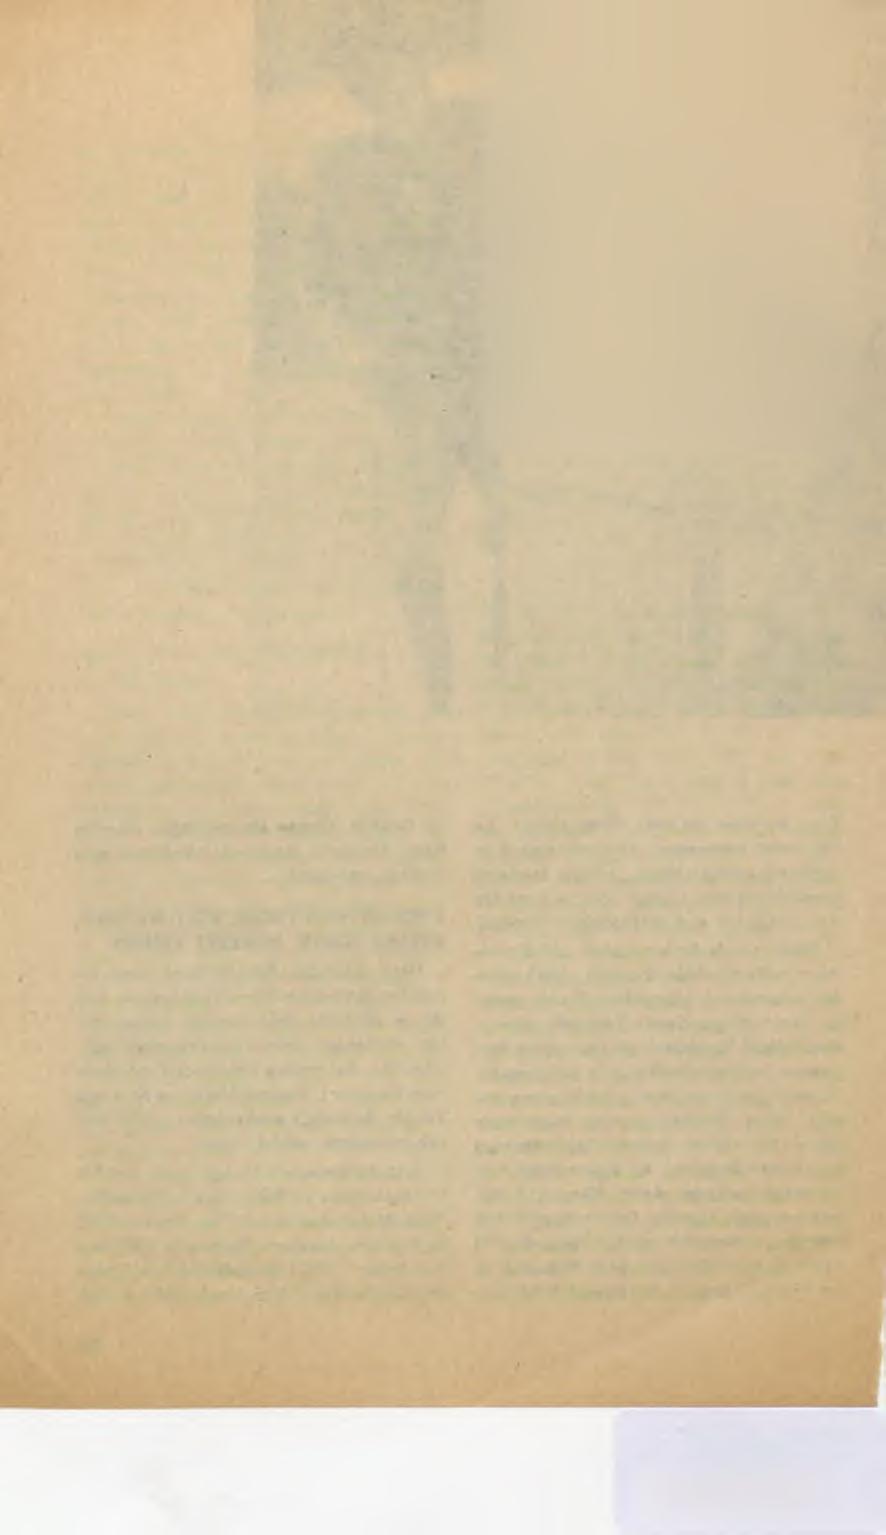 maz, «Kadın Severse»/1955 Atıf Yılmaz, «Dağları Bekleyen Kız» 1956 A. Yılmaz, «İlk ve Son» 1956 A. Yılmaz, 1970 Memduh On, «Son Tren/1964 N. Saydam, «Çölde Bir İstanbul Kızı»/1957 Faruk Kenç.